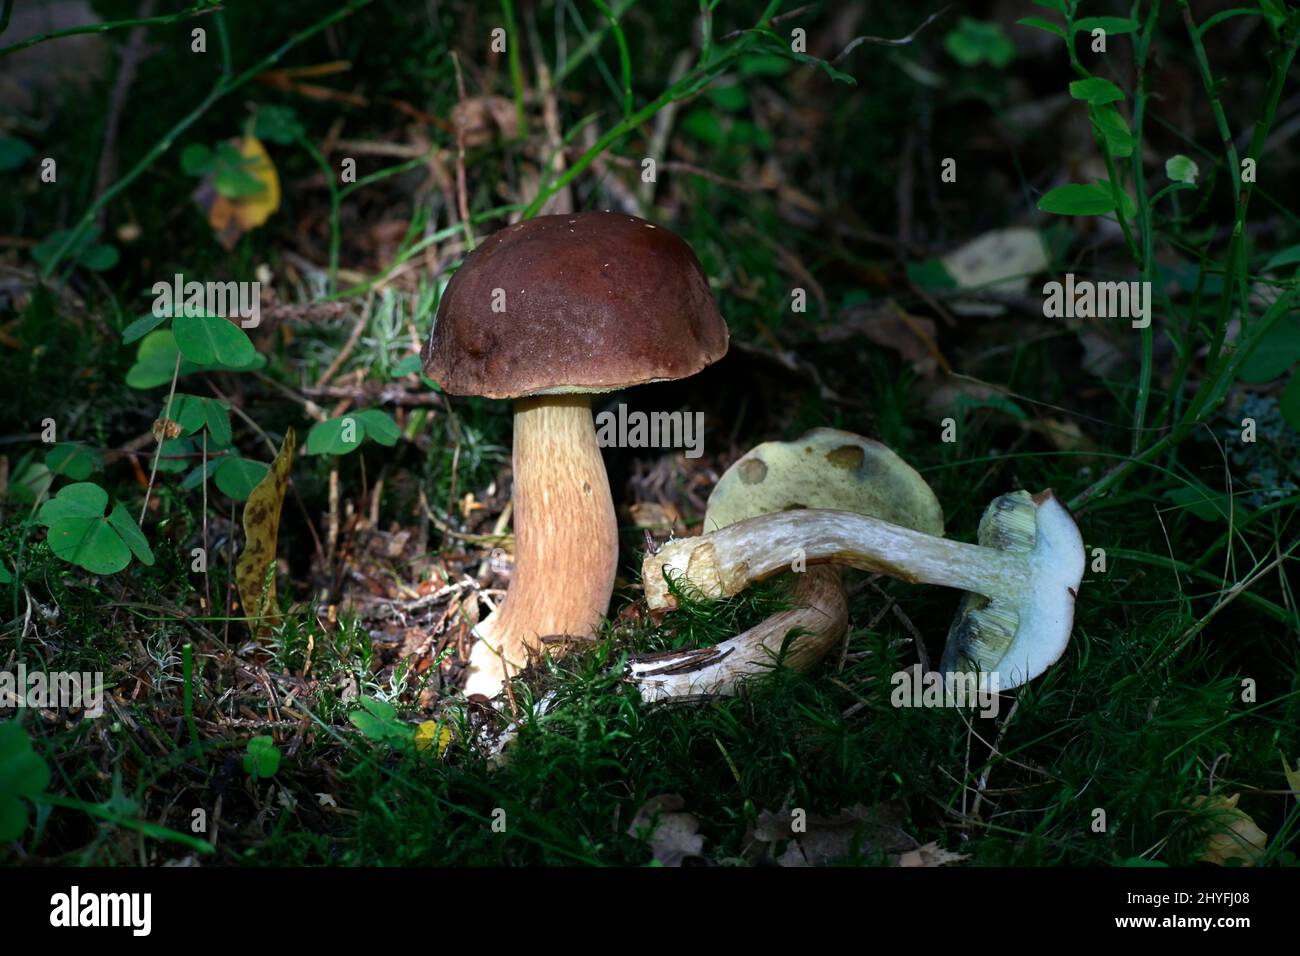 Imleria badia, connu sous le nom de bay bolet champignon sauvage, à partir de la Finlande Banque D'Images